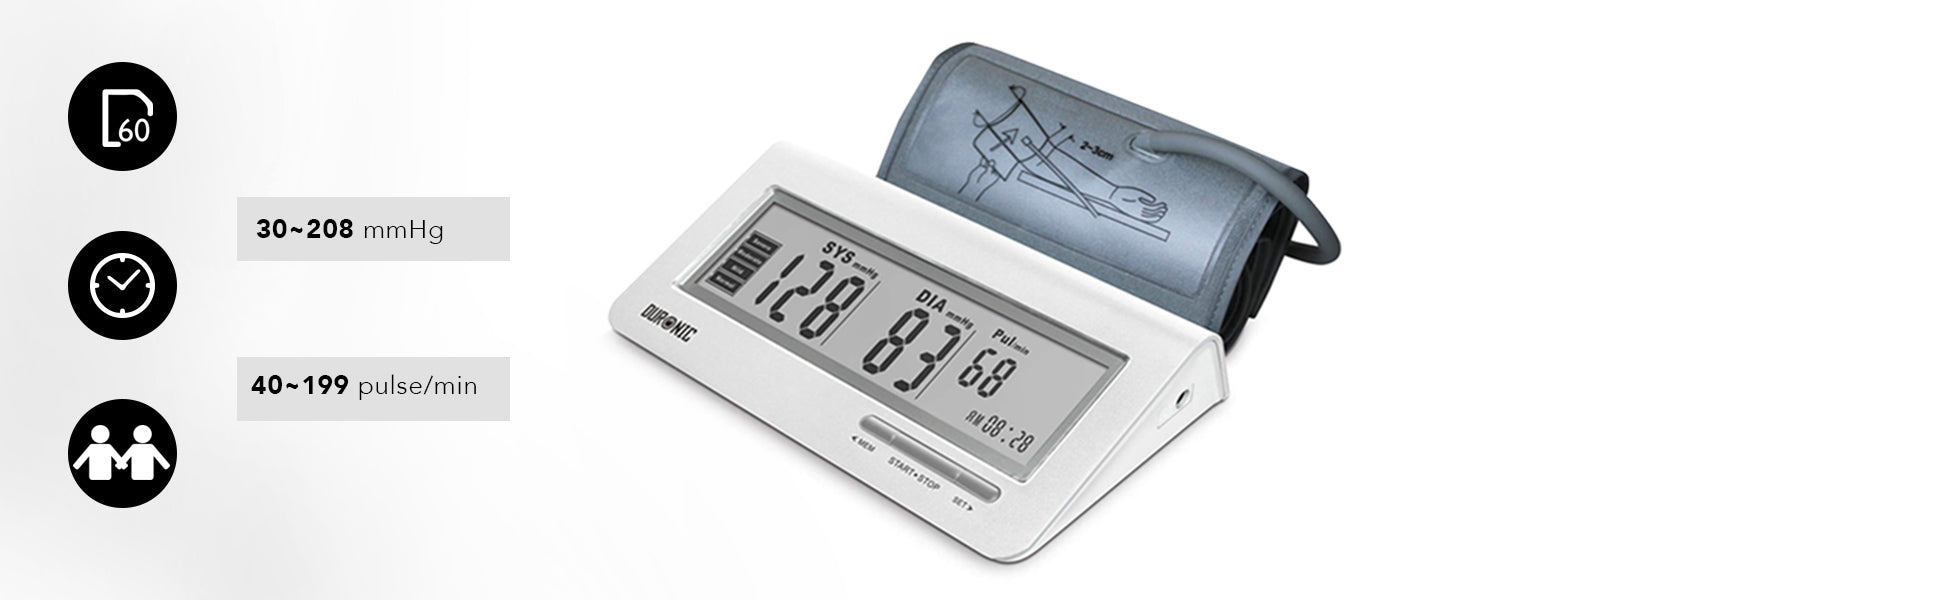 Duronic bpm450 tensiomètre électronique pour bras - brassard ajustable  22-42 cm - mesure automatique de la tension artérielle - certifié  médicalement - Conforama